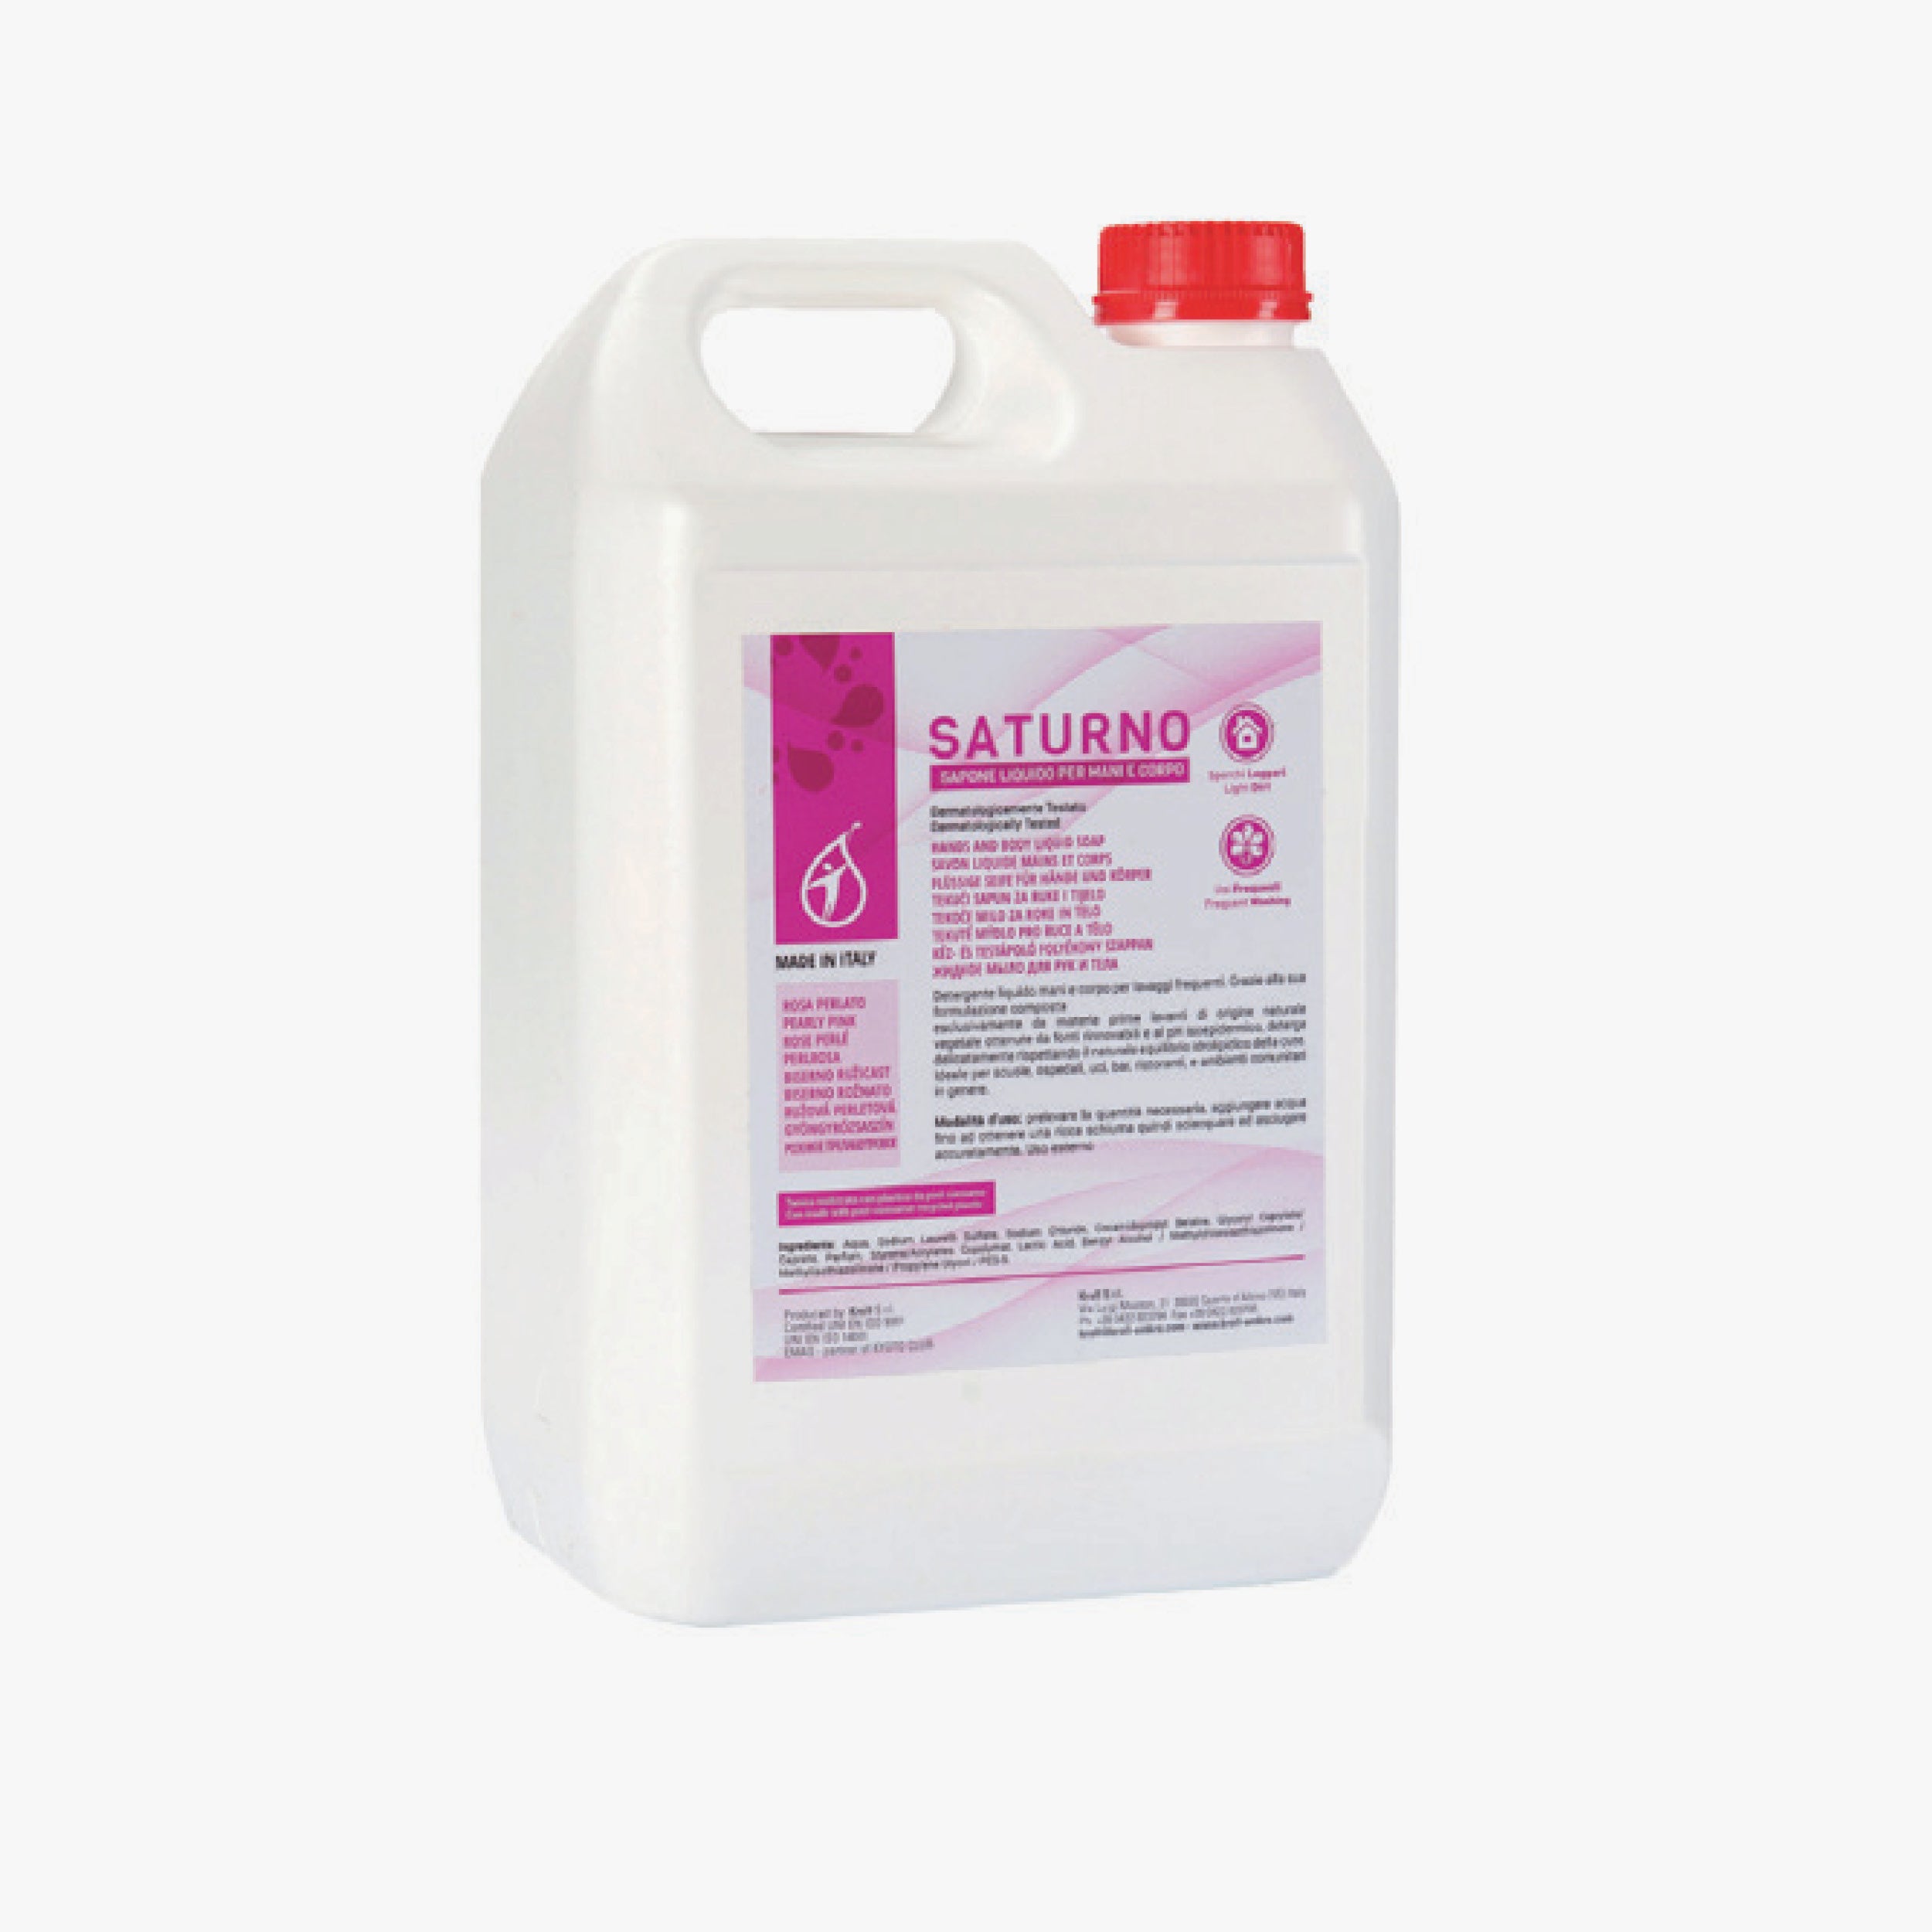 3122 - Saturno sapone liquido rosa tanica 5L - 1pz